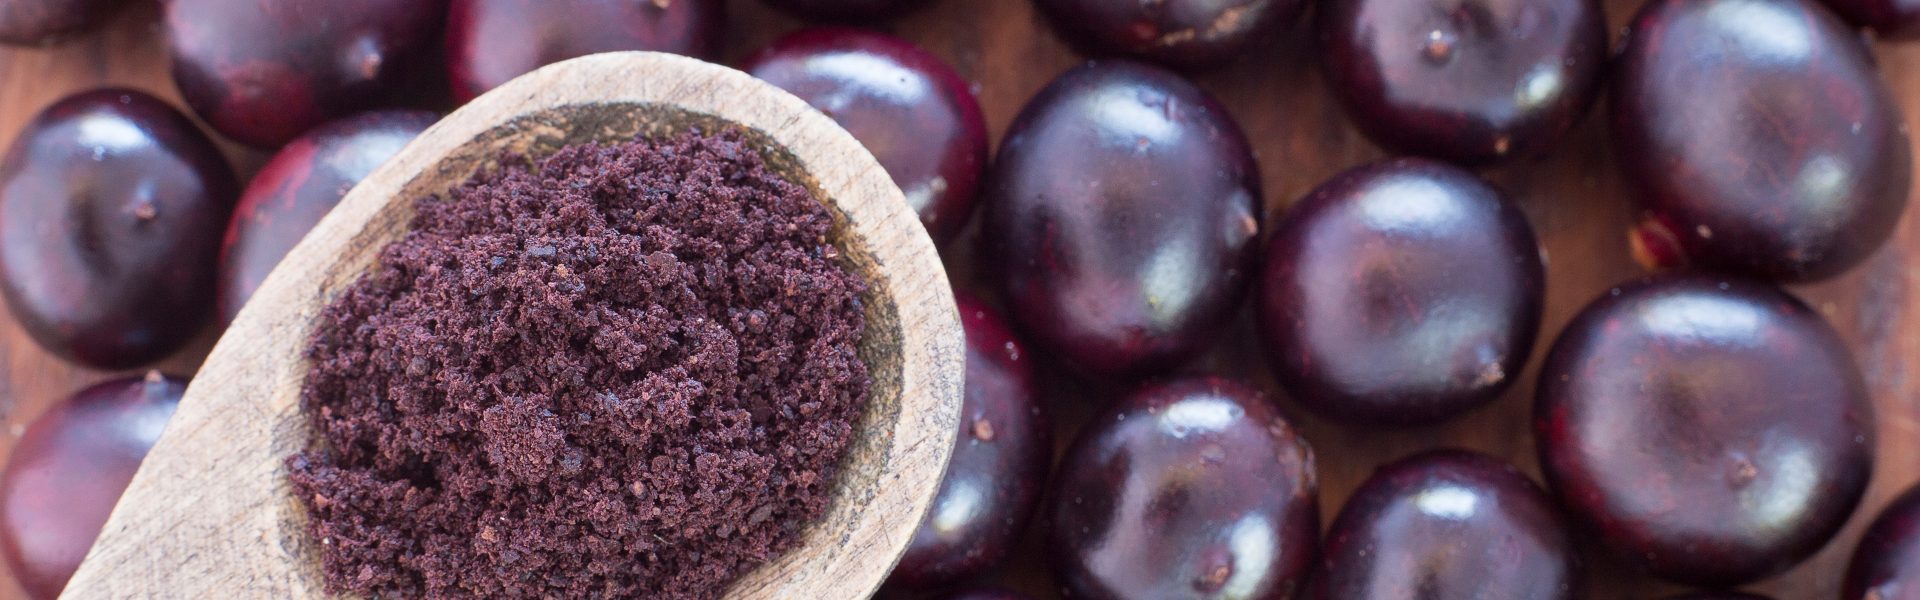 Ovoce barvy fialky: extra chuť a výjimečné zdravotní účinky